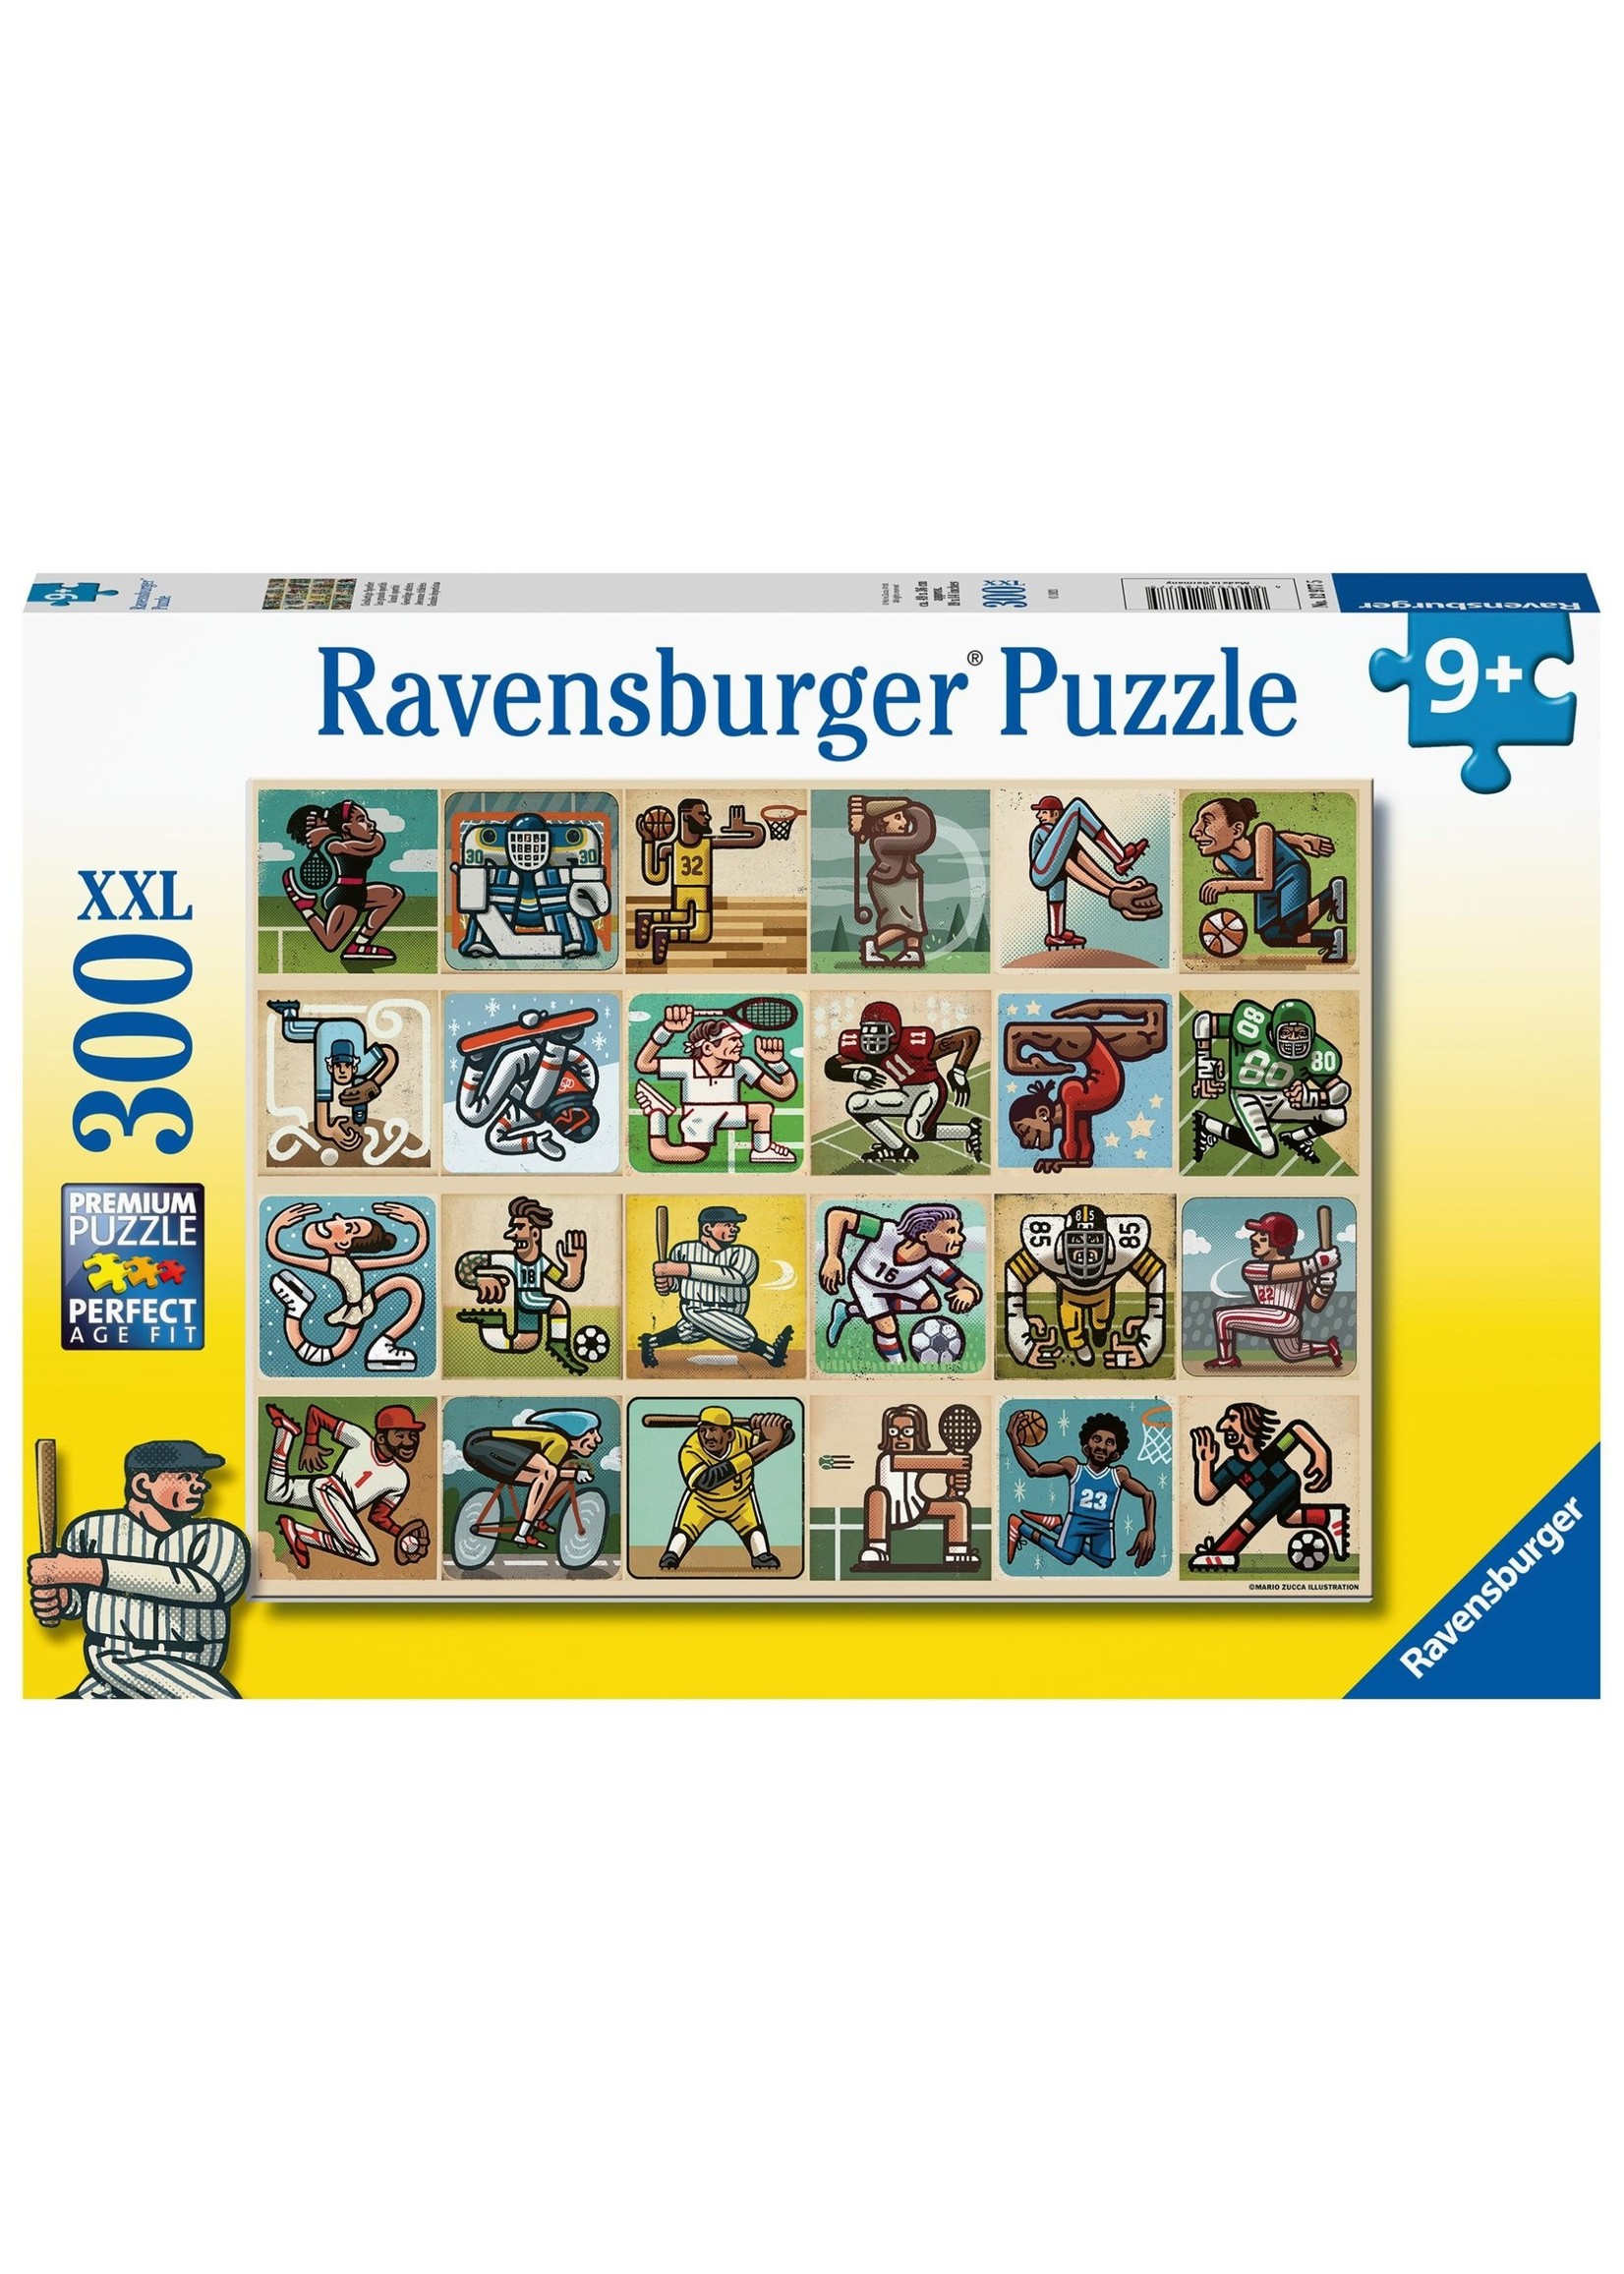 Ravensburger Puzzle Ravensburger 300 pcs: Awesome athletes